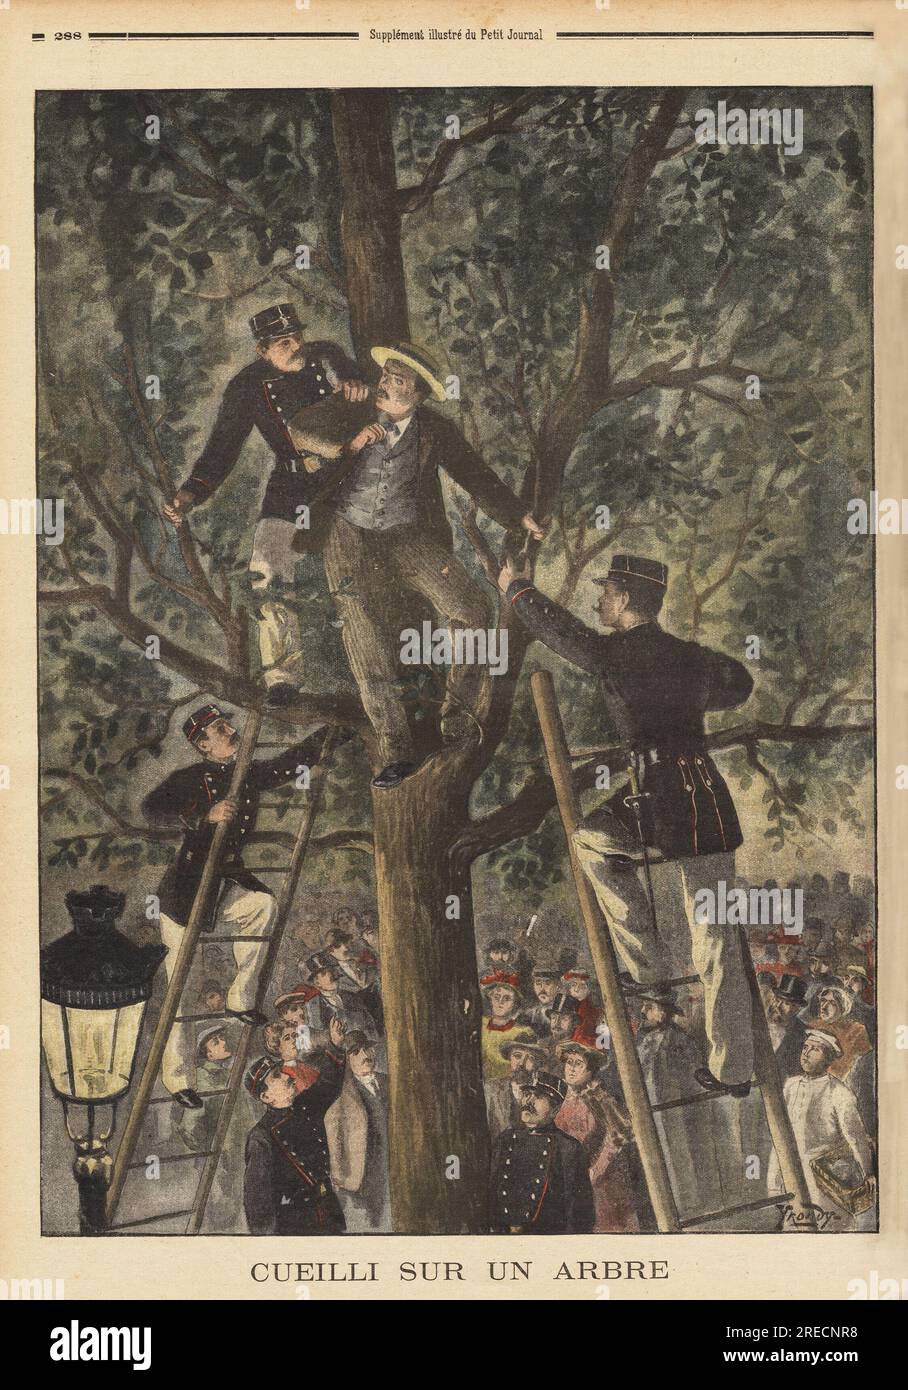 UN Taschendieb Trouve Zuflucht dans un arbre pour echapper a la Police, Mais Sohn butin glisse de ses poches Revelant sa cachette. Gravure in "Le Petit Journal" 891901. . Stockfoto